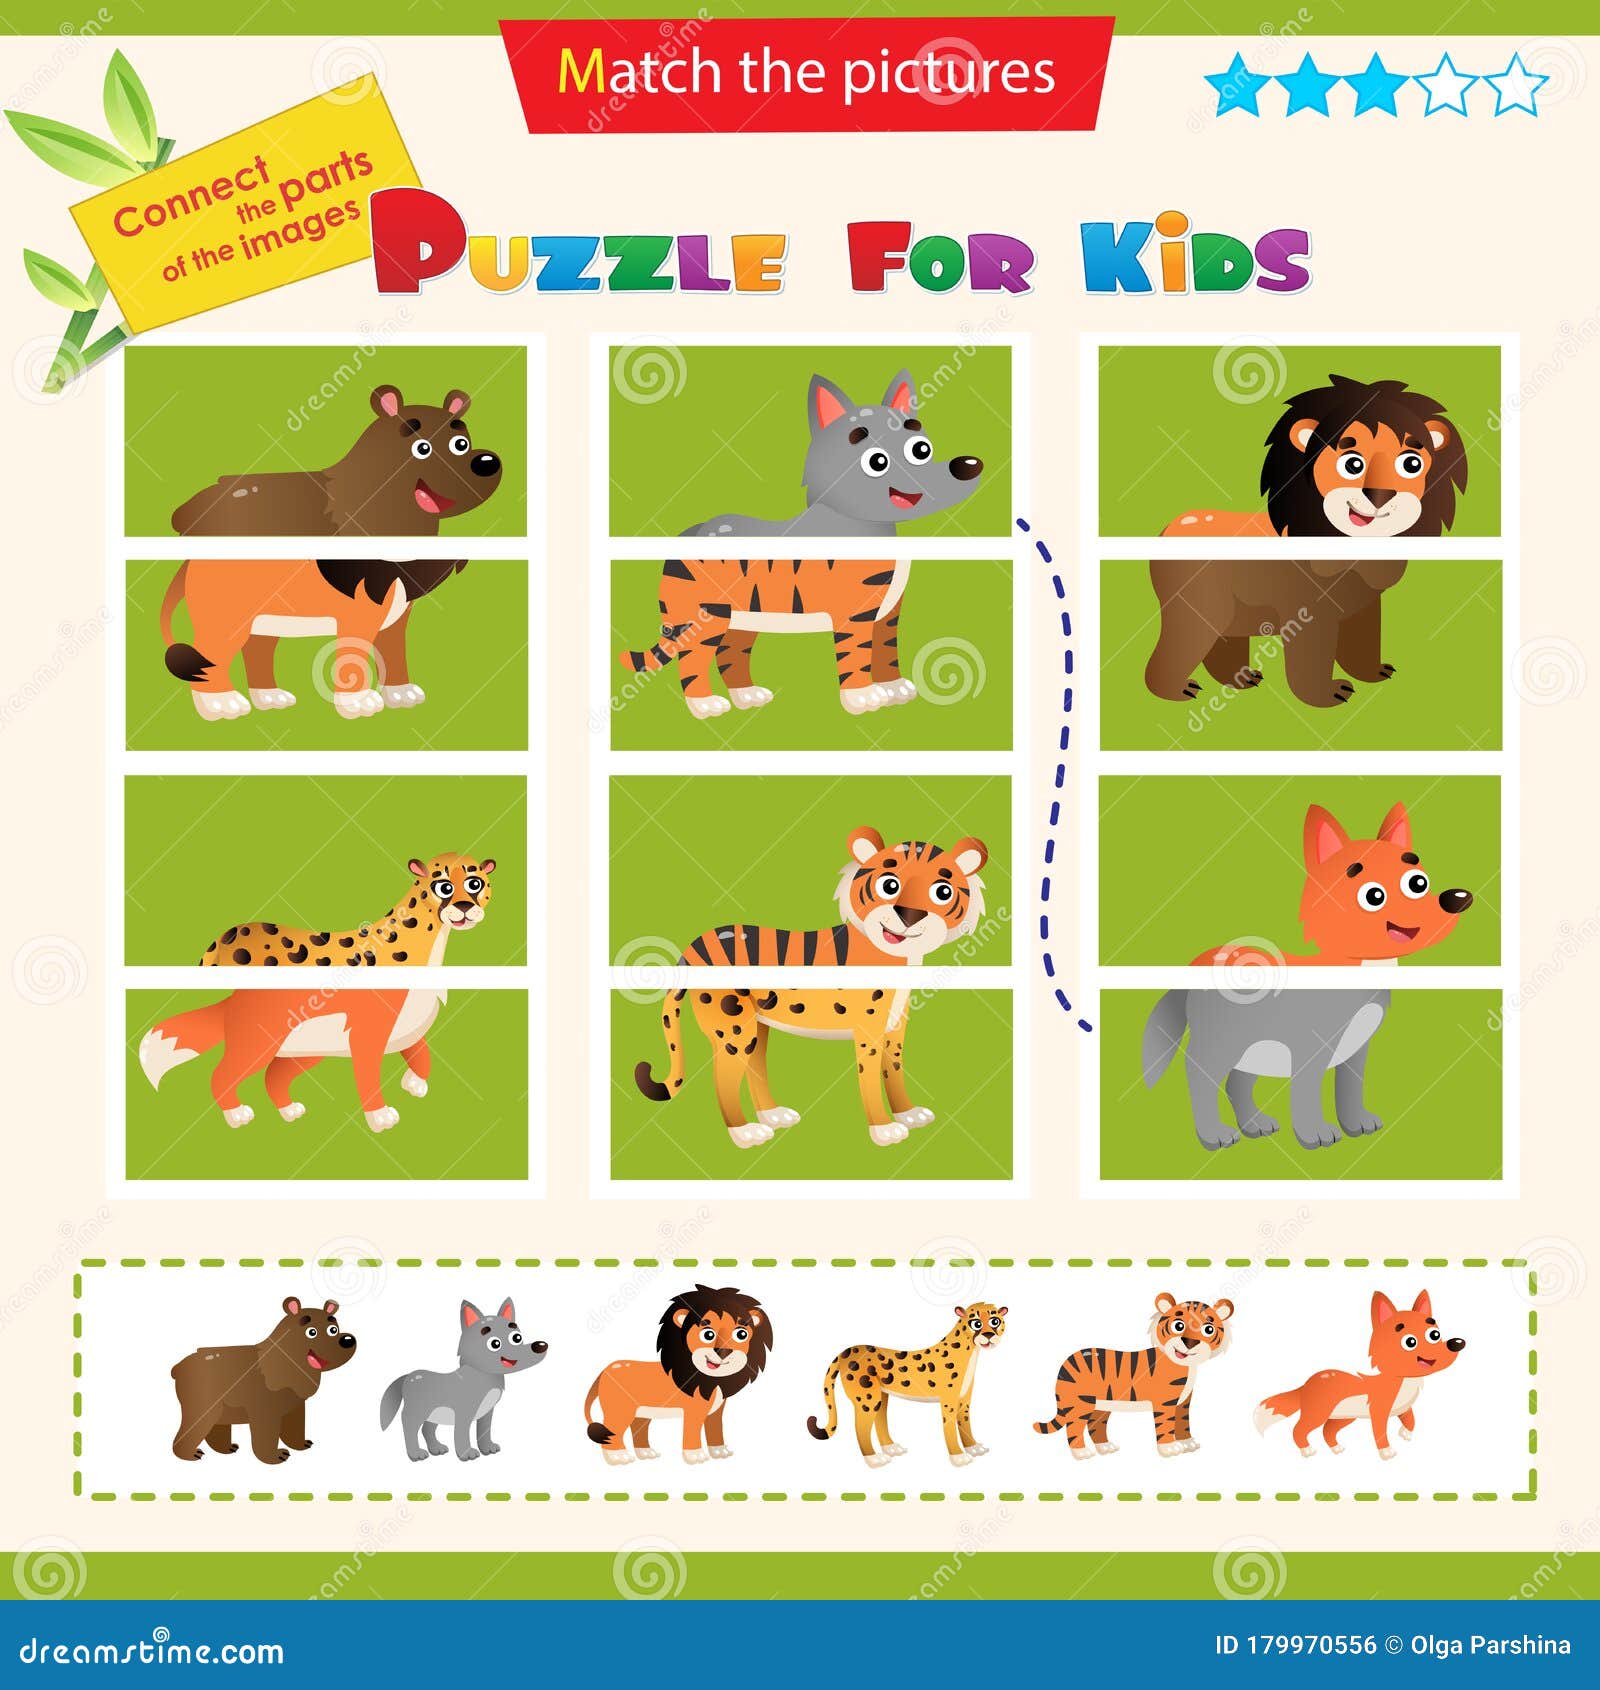 Set 4 Jigsaw Puzzle Reversible Safari Animal Lion Tiger Children's Kids Toy game